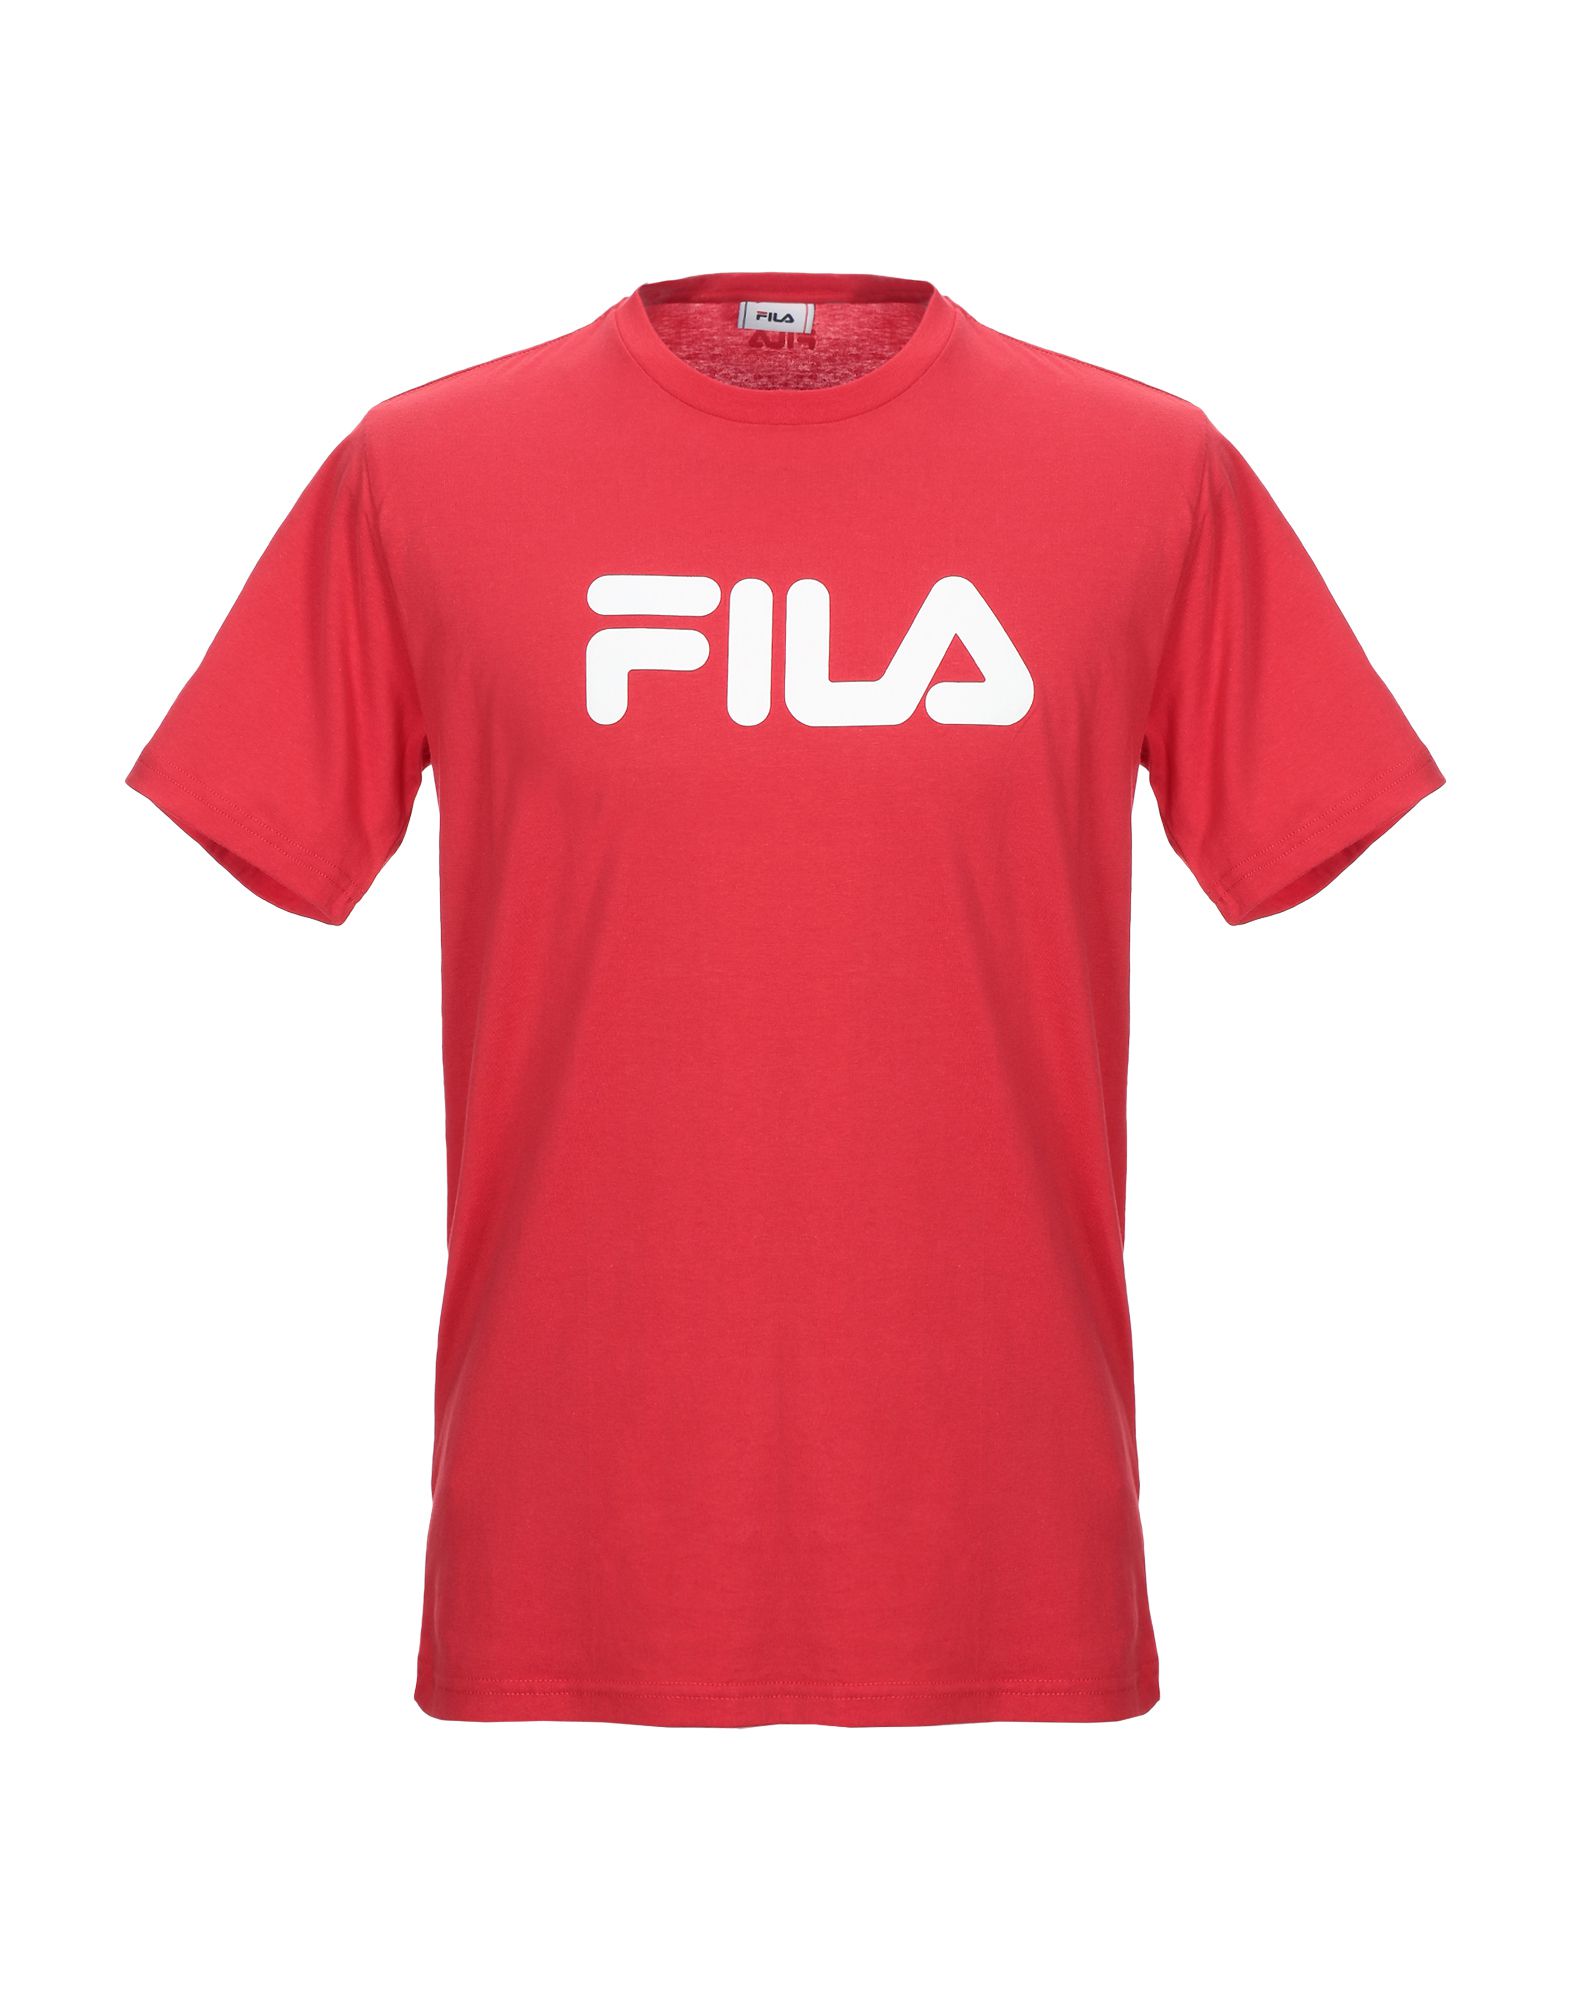 FILA T-shirts Herren Rot von FILA